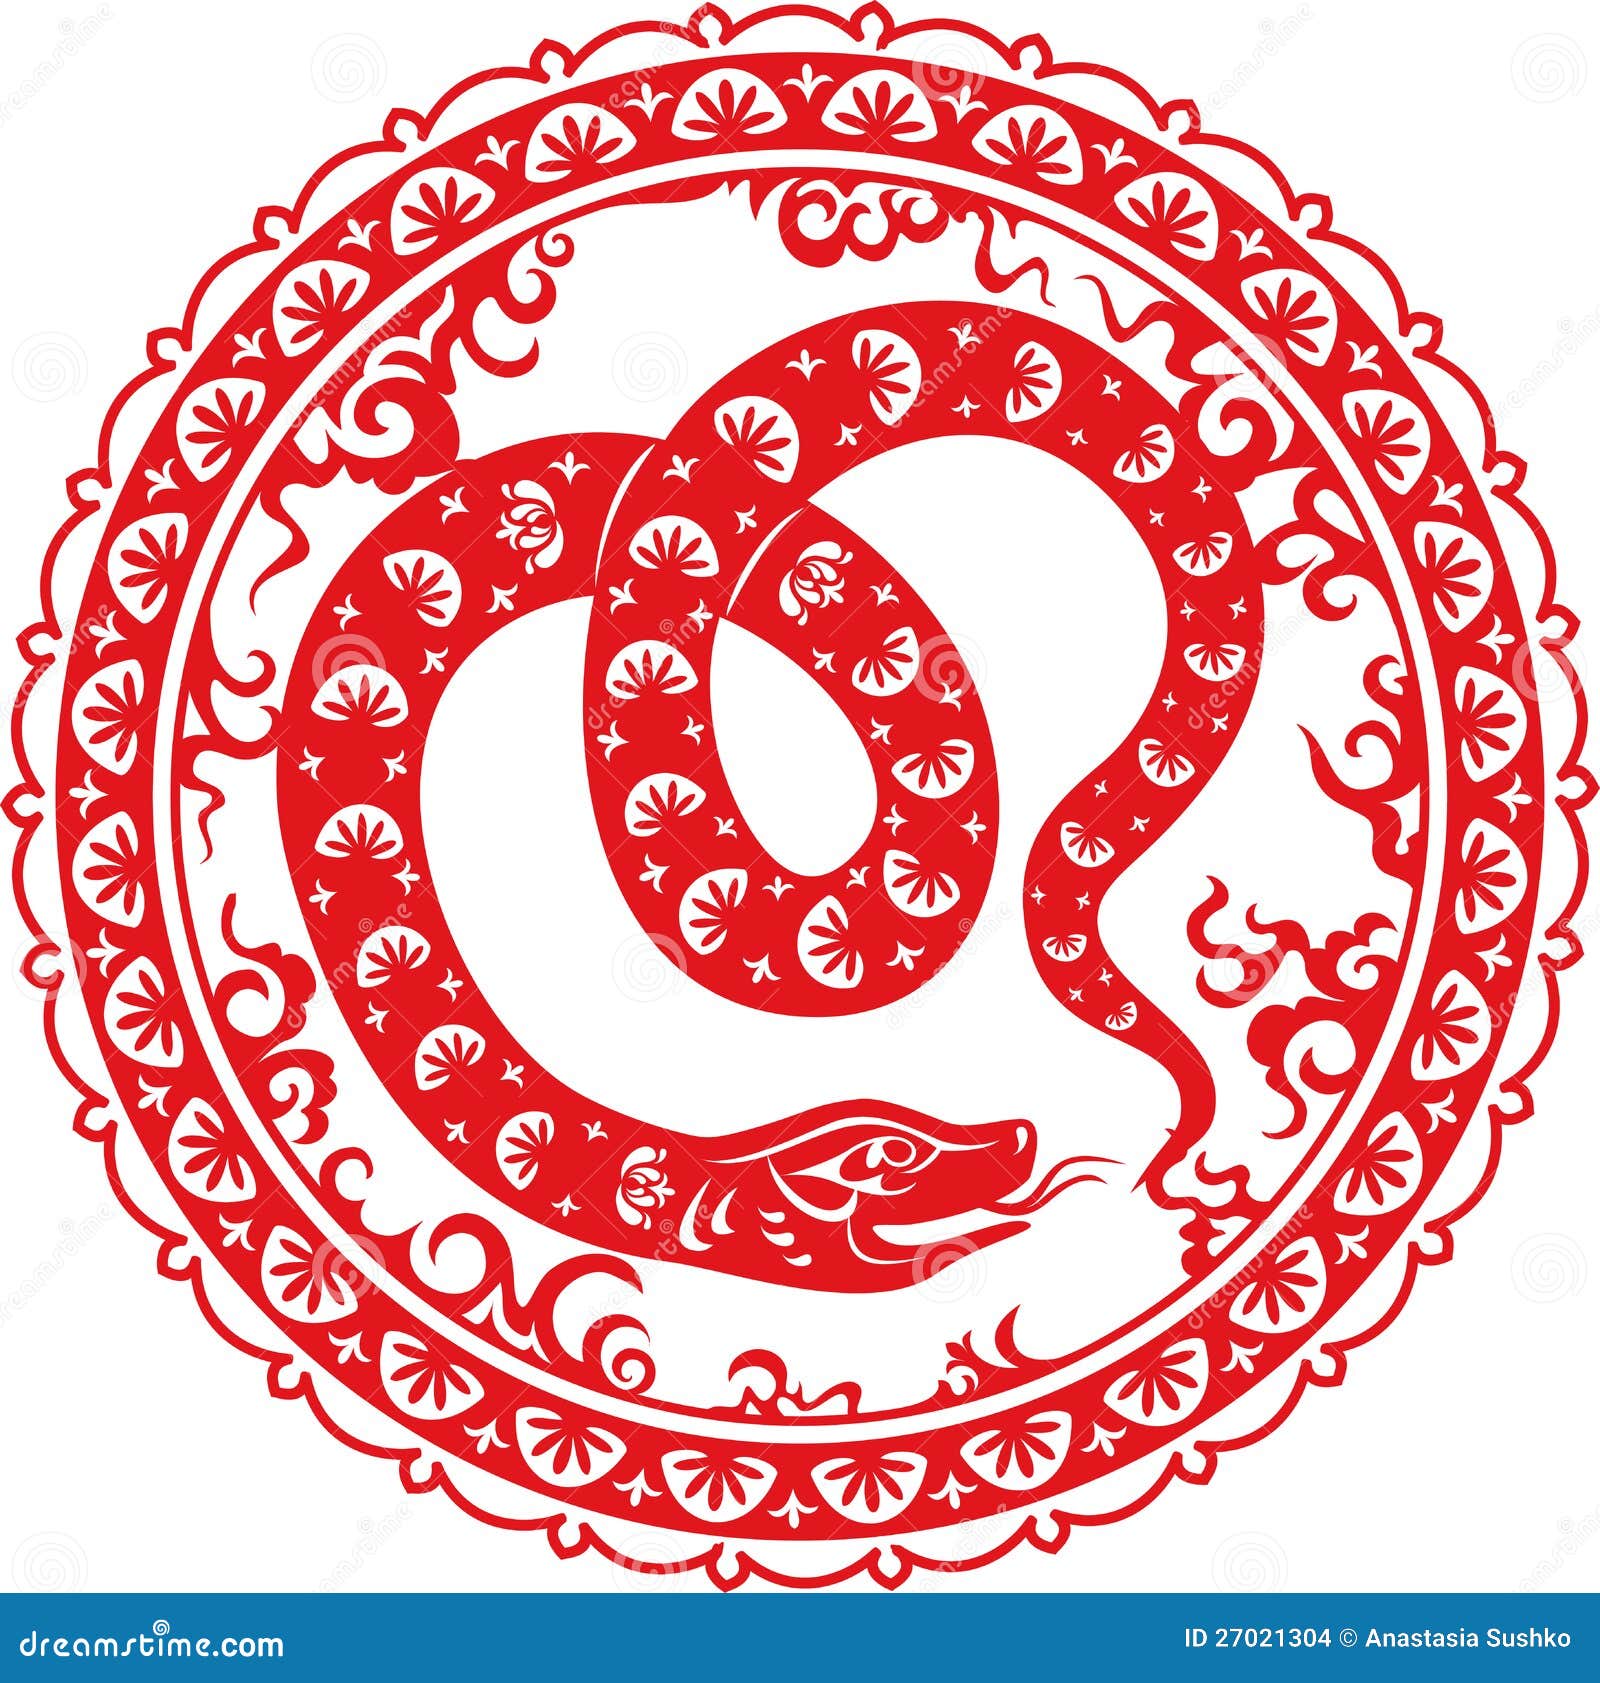 Год змеи символ китайский. Зодиак змея. Китайский 2013 год змеи. Китайская змея символ года.